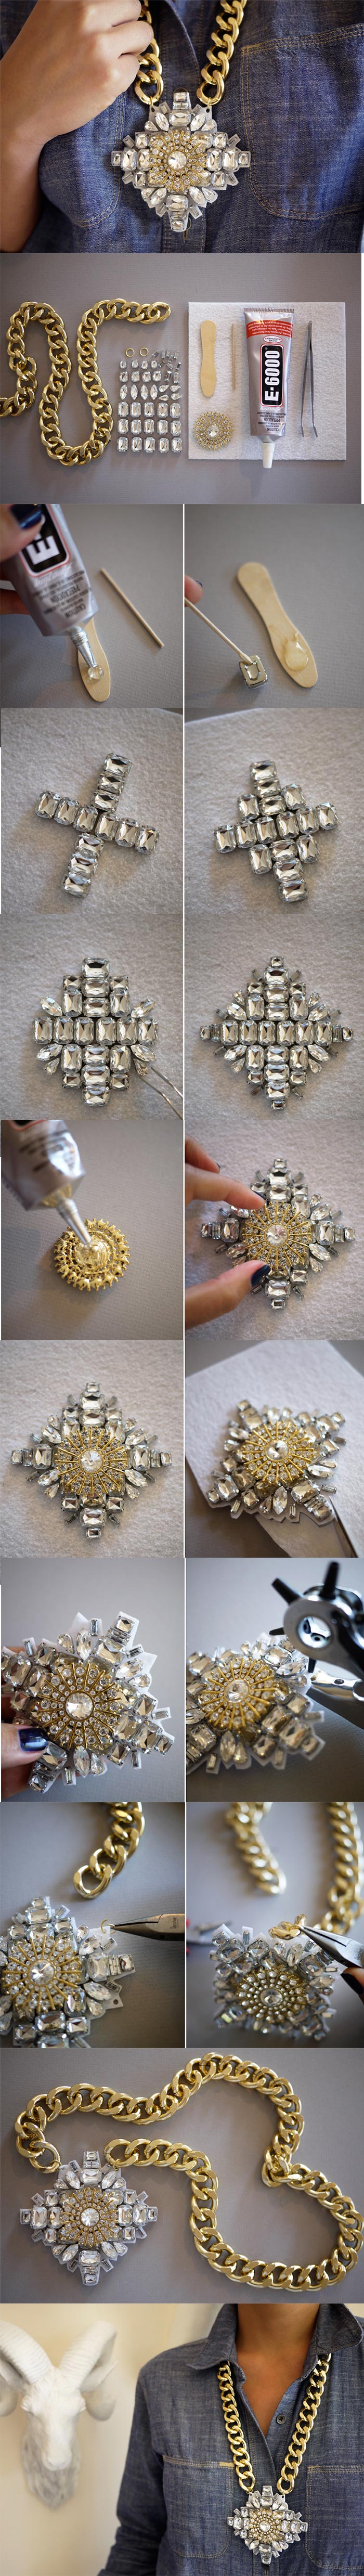 Crystal-Necklace-DIY